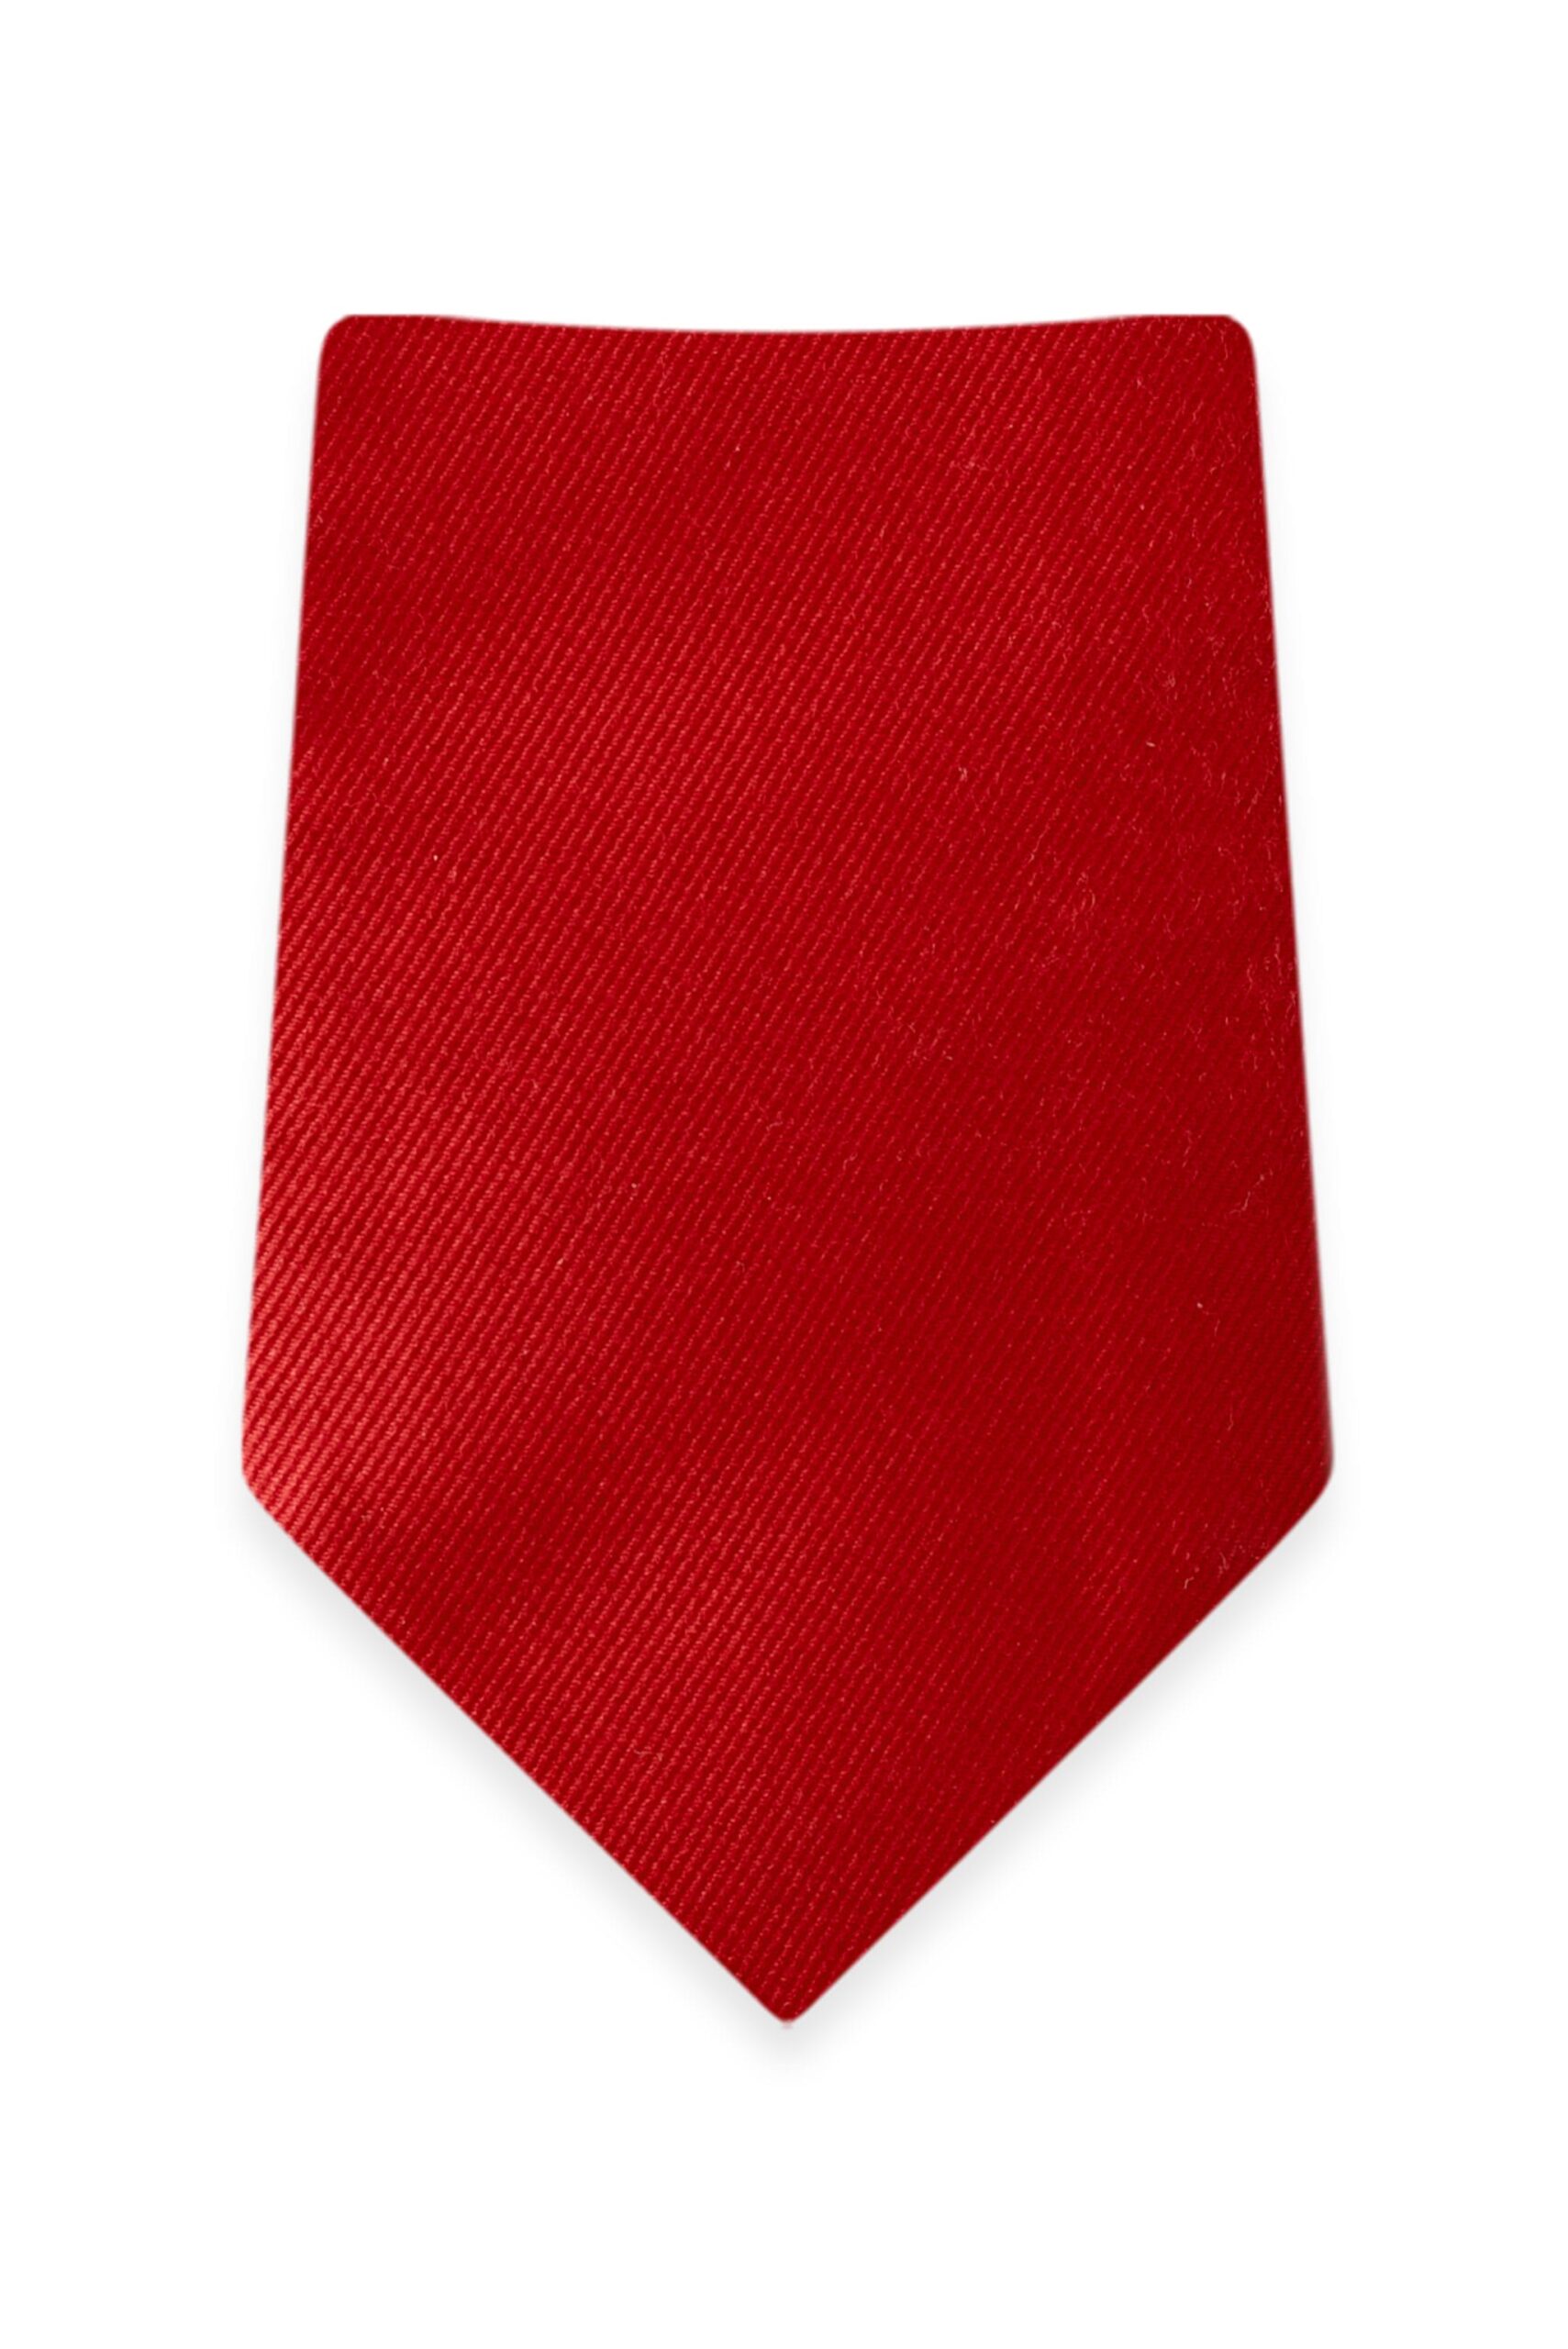 Solid Ferrari Red Self-Tie Windsor Tie